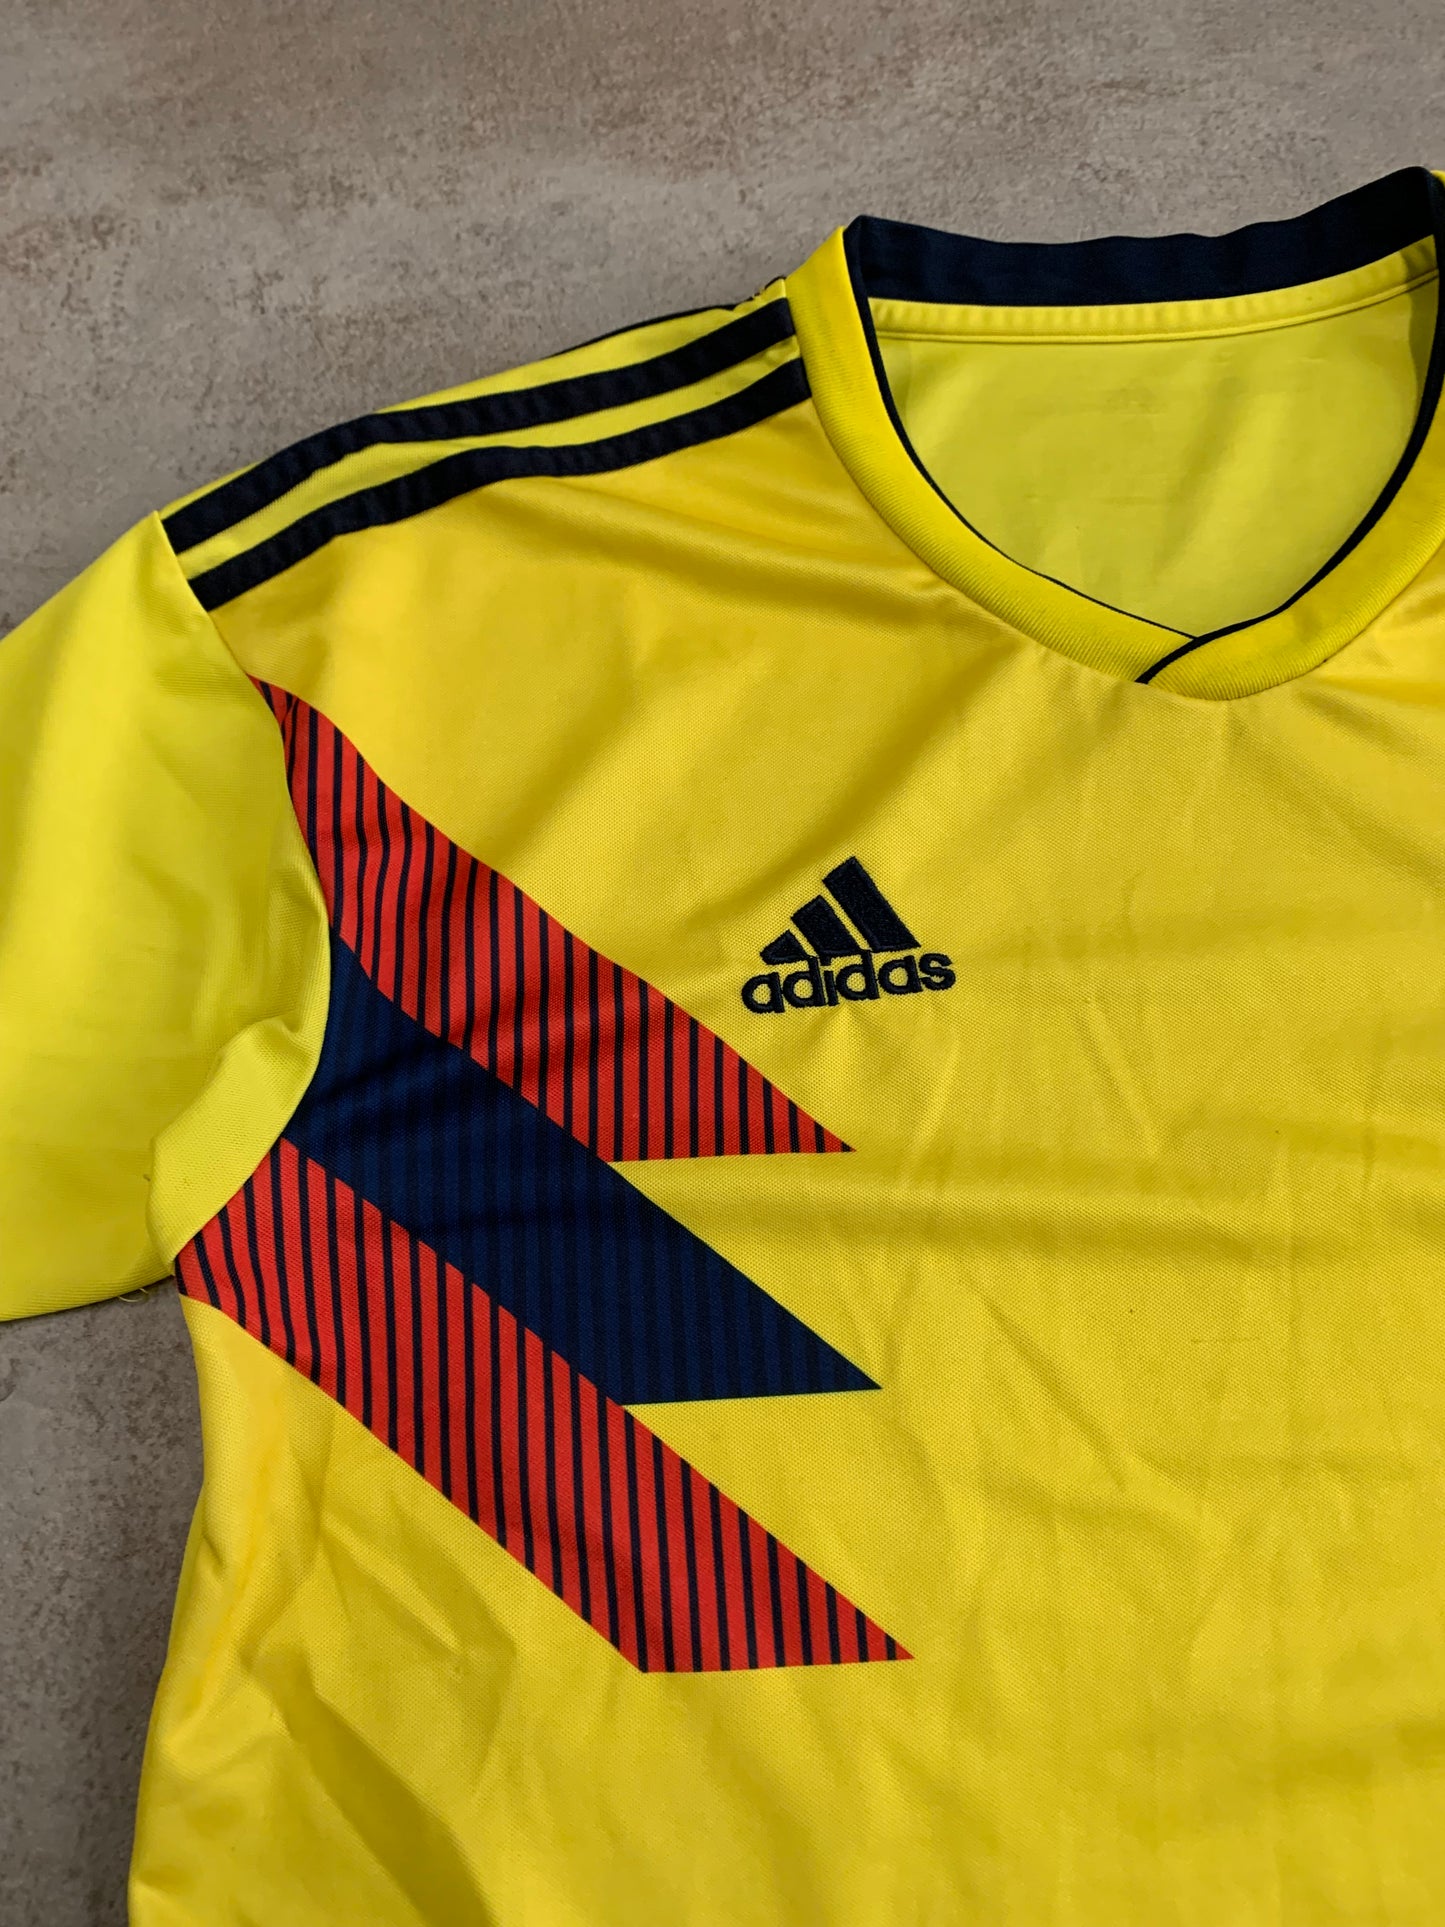 Camiseta Vintage Adidas Colombia -M